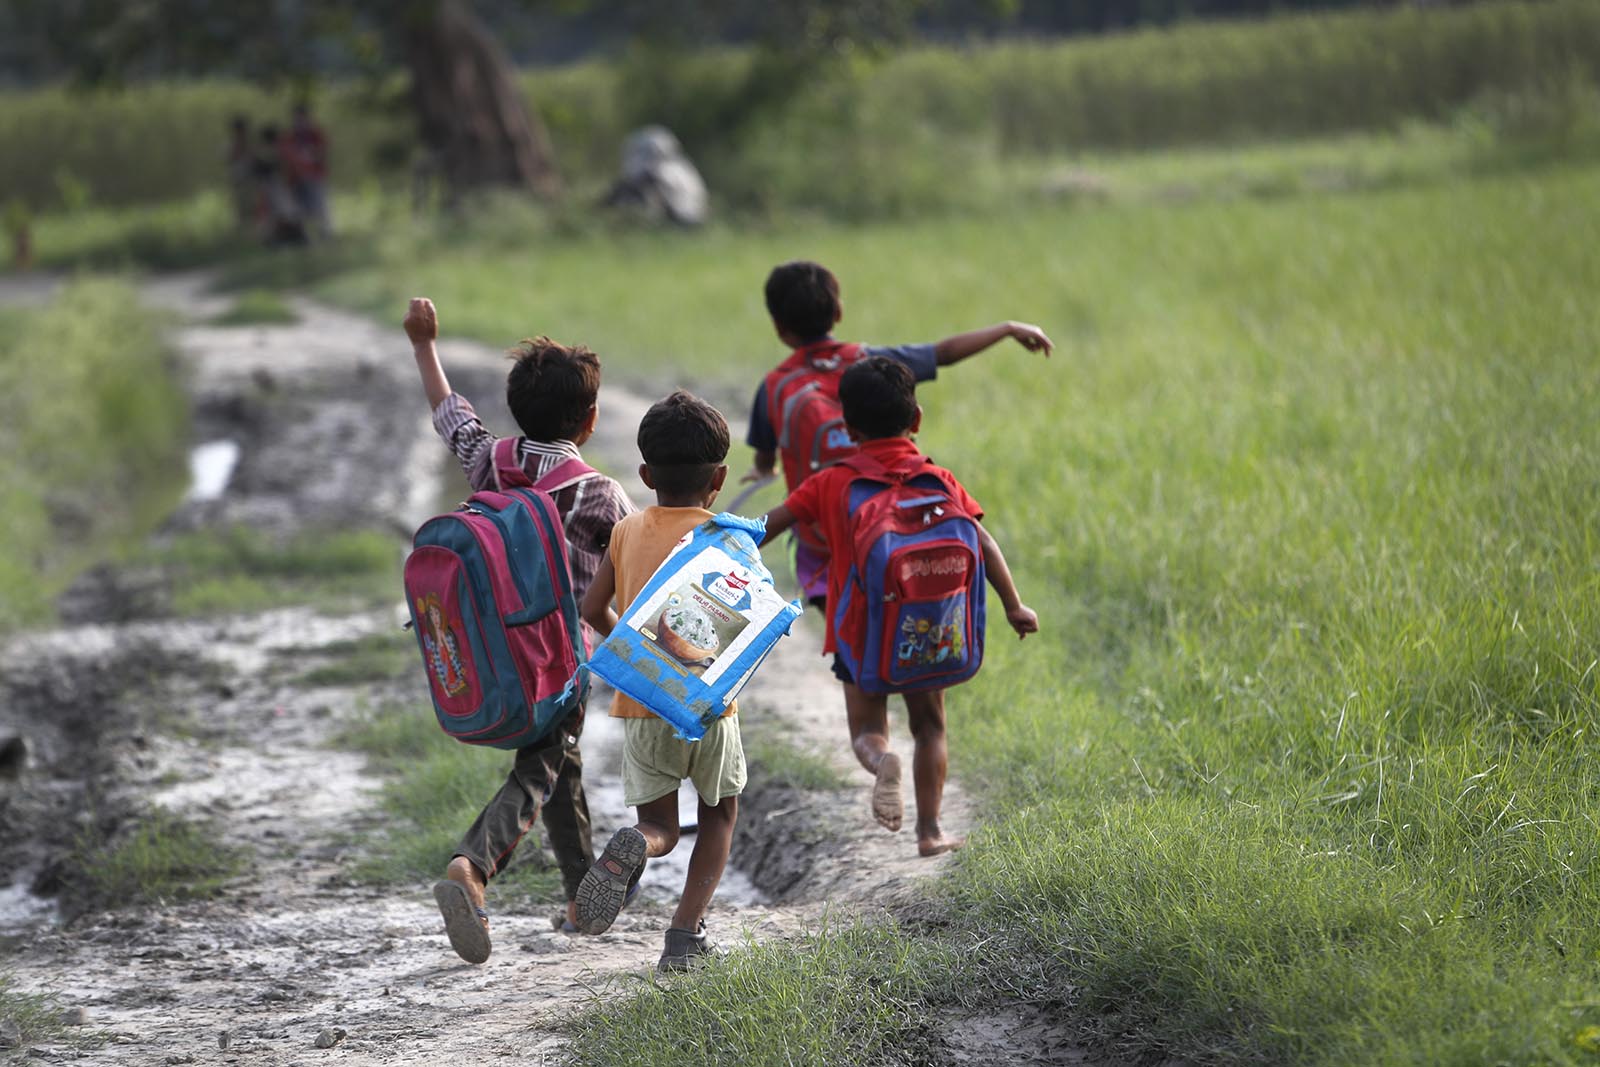 הילדים צועדים בכל יום כ-2 ק"מ מביתם לכיתה המאולתרת בניו דלהי (AP Photo/Manish Swarup)